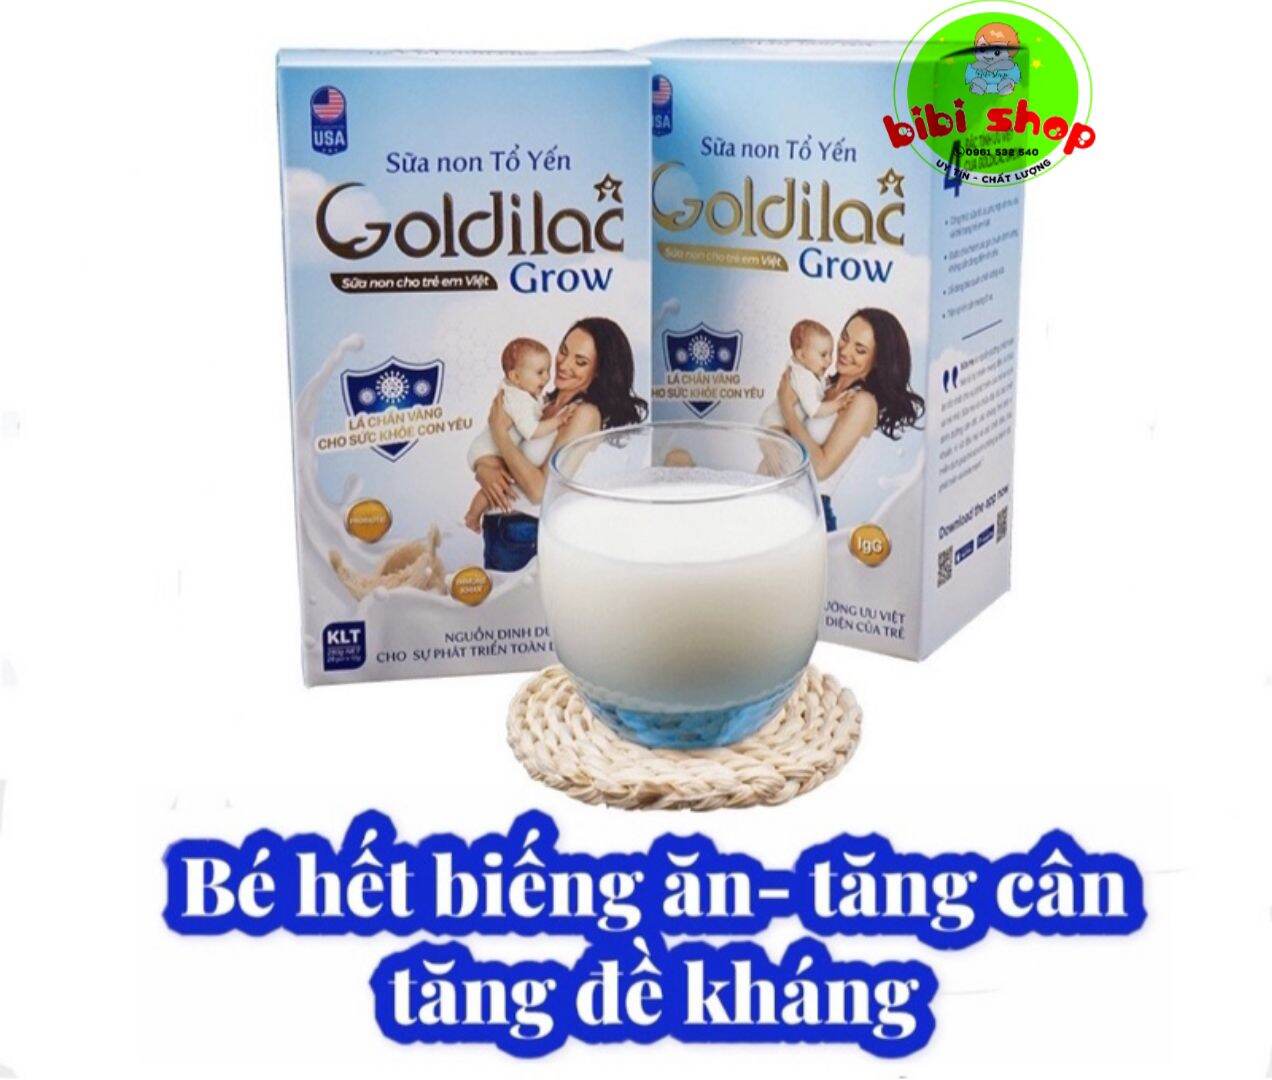 Sữa non Goldilac Grow sữa non tổ yến Goldilac Grow